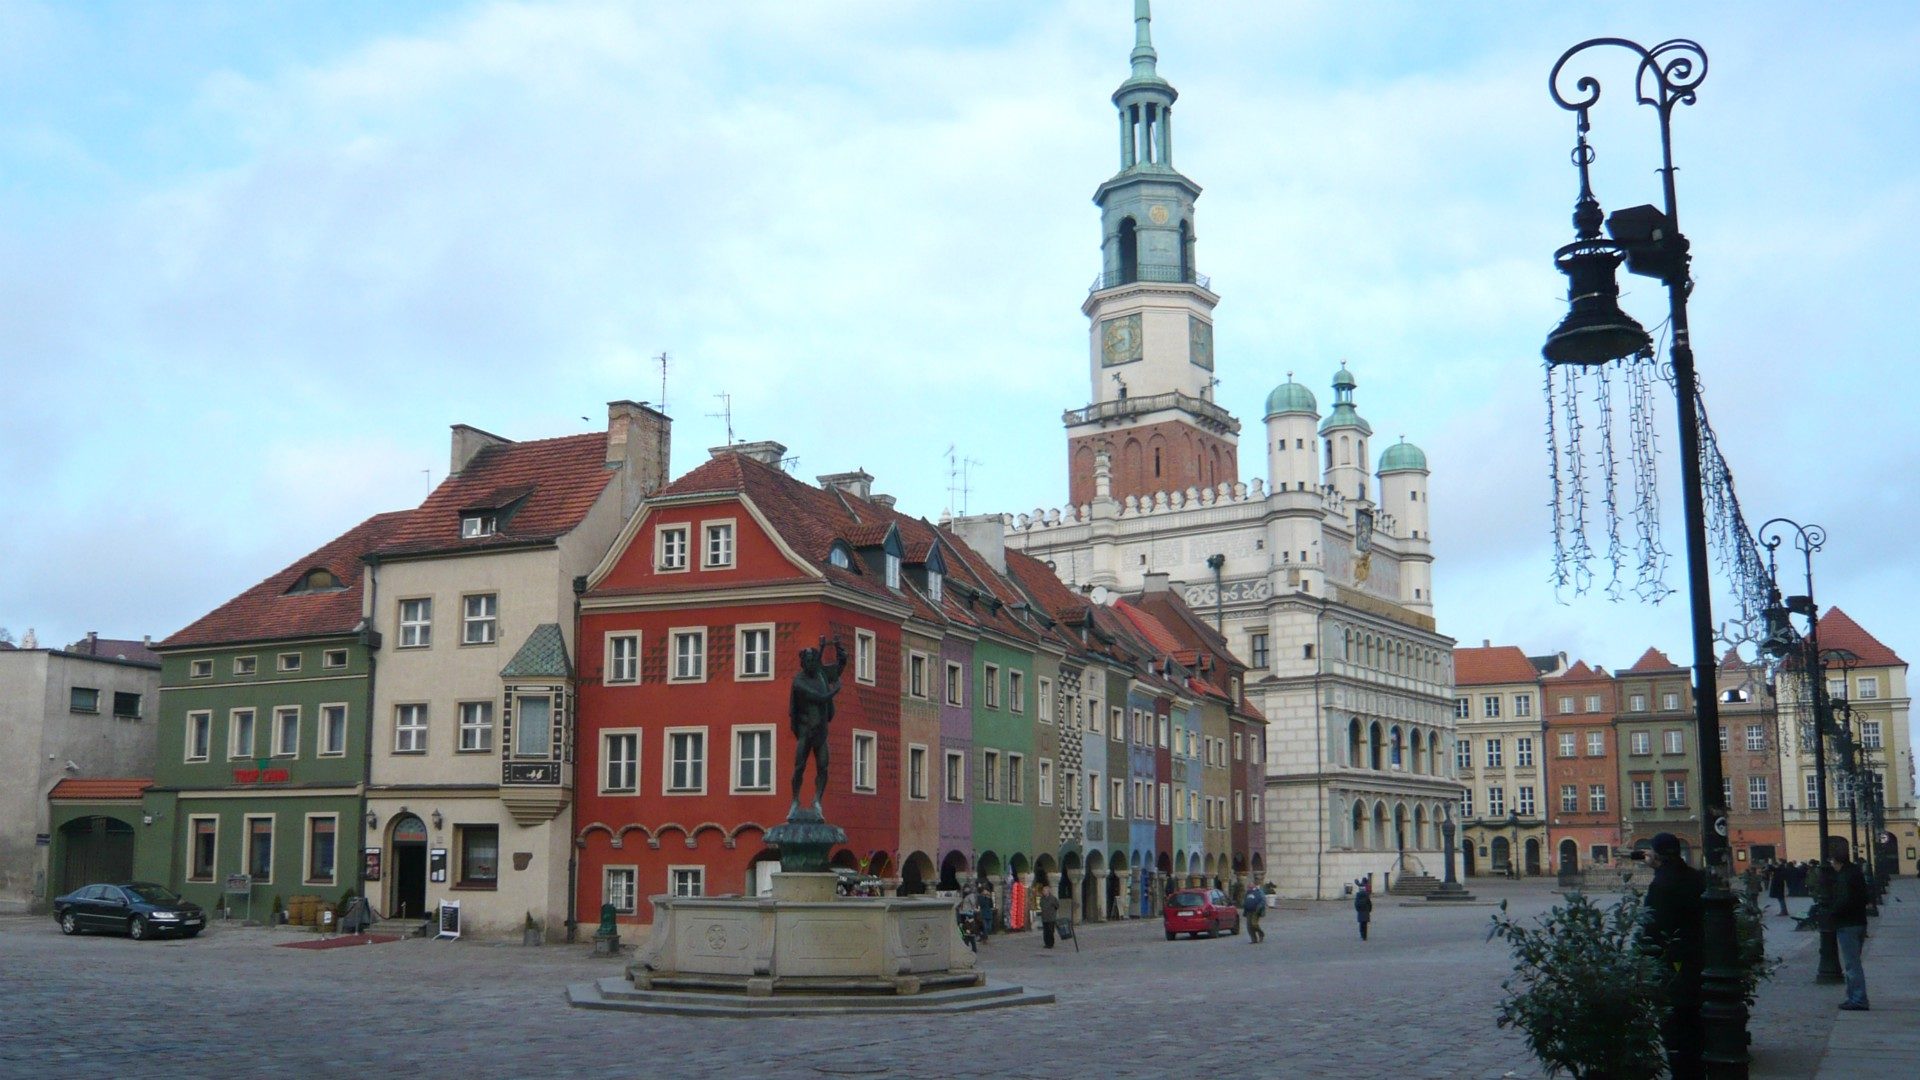 Les évêques européens sont réunis à Poznan (Pologne) (Photo:Flightlog/Flickr/CC BY 2.0)